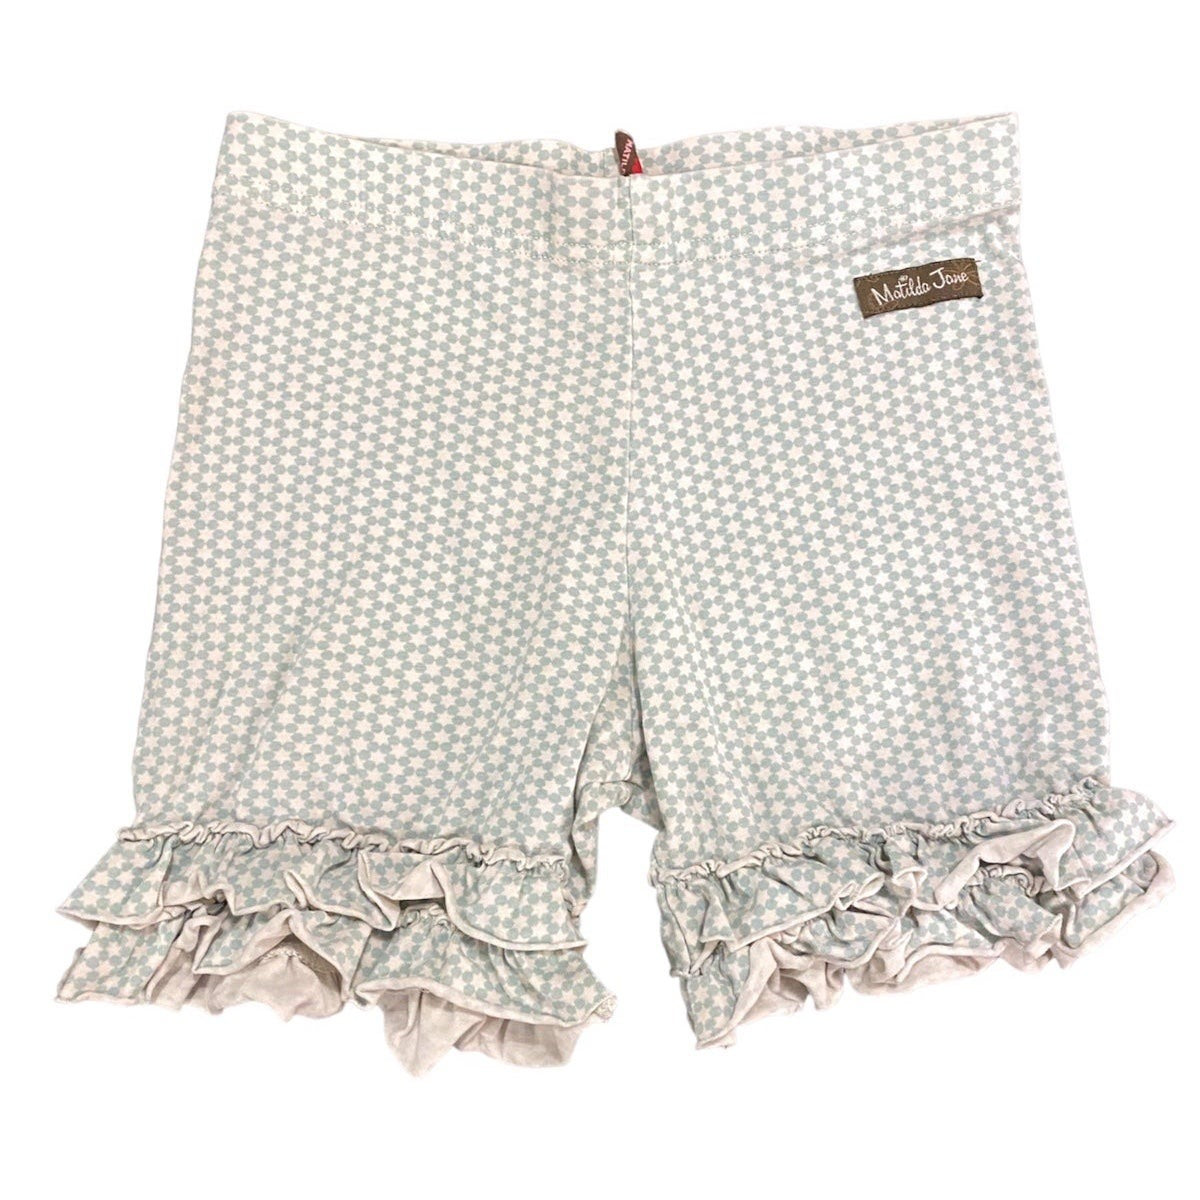 Size 6 Matilda Jane serendipity ruffle shorts –